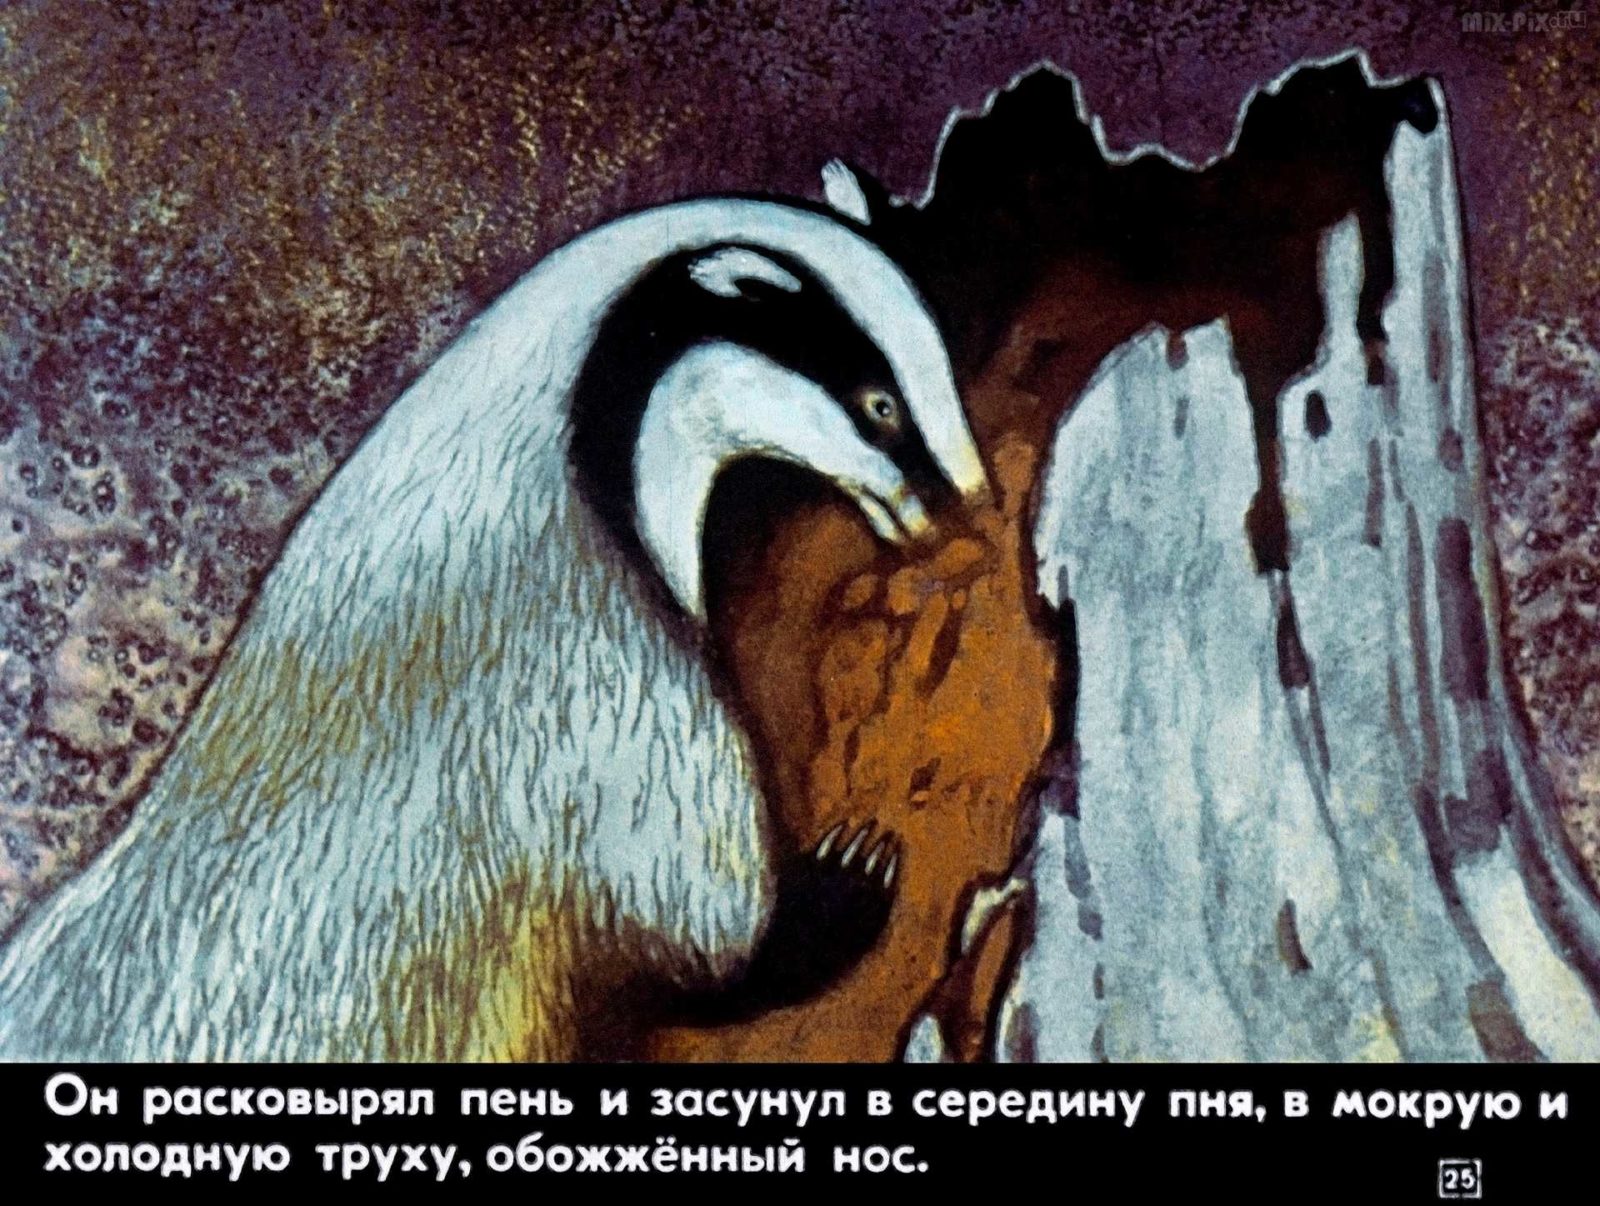 Идея произведения барсучий нос. Иллюстрация к рассказу барсучий нос Паустовский. К. Паустовский "барсучий нос".